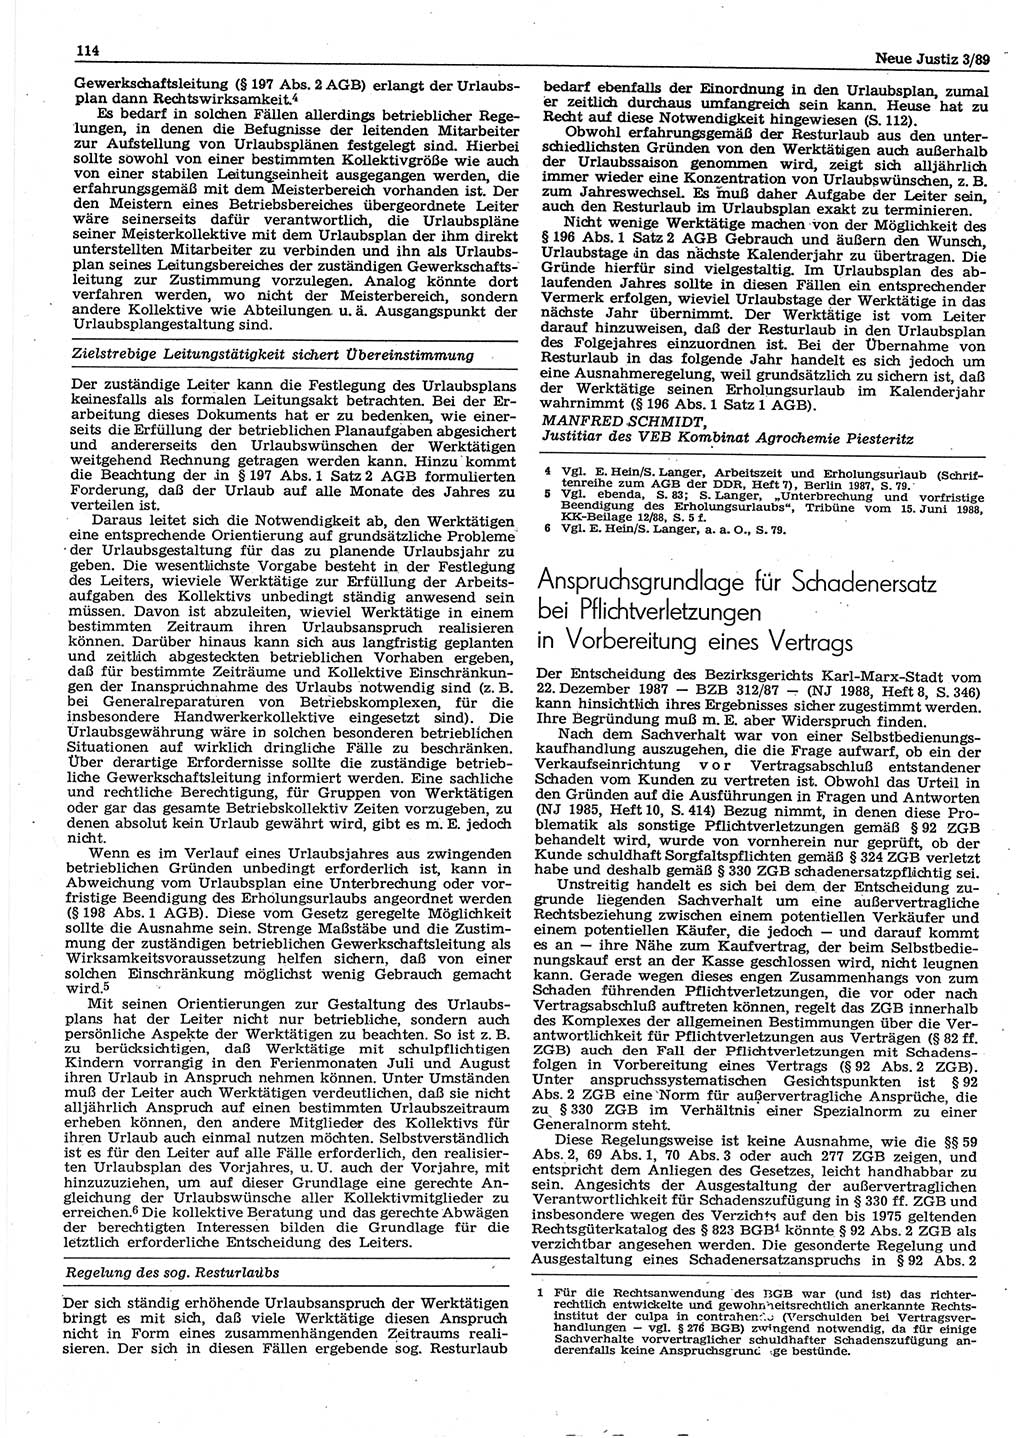 Neue Justiz (NJ), Zeitschrift für sozialistisches Recht und Gesetzlichkeit [Deutsche Demokratische Republik (DDR)], 43. Jahrgang 1989, Seite 114 (NJ DDR 1989, S. 114)